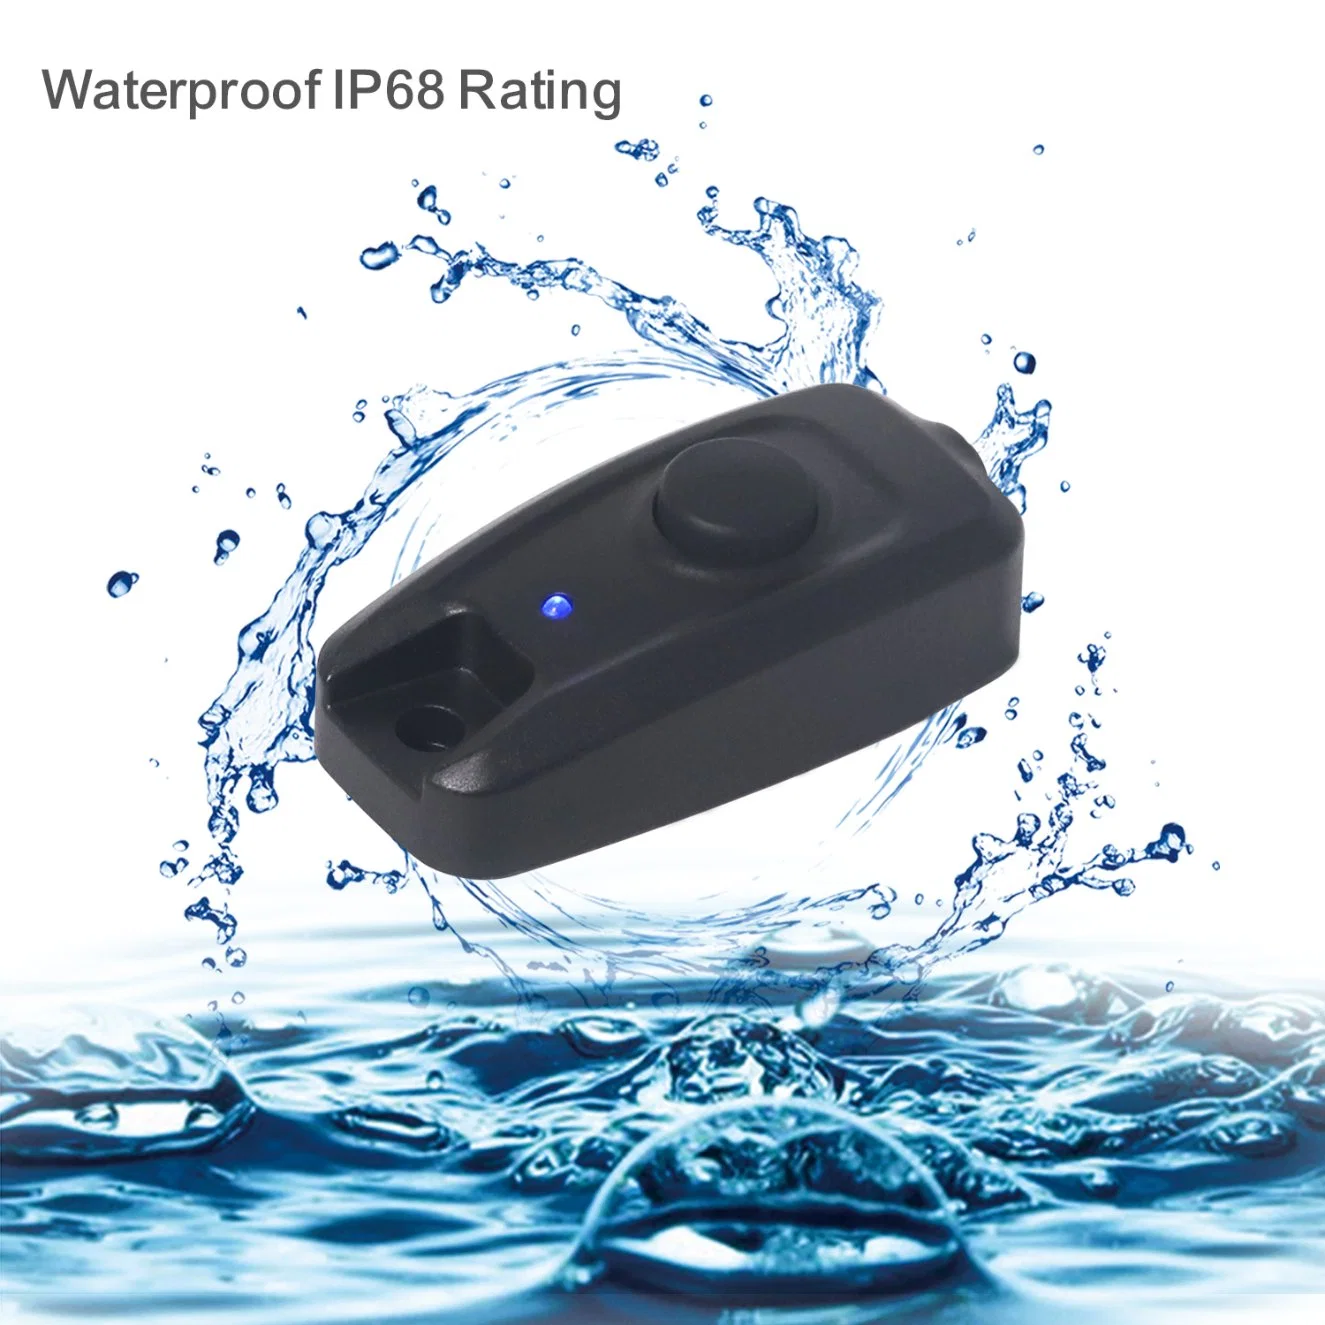 Edge Wsk1 resistente al agua IP68, pulse el botón interruptor WSK1